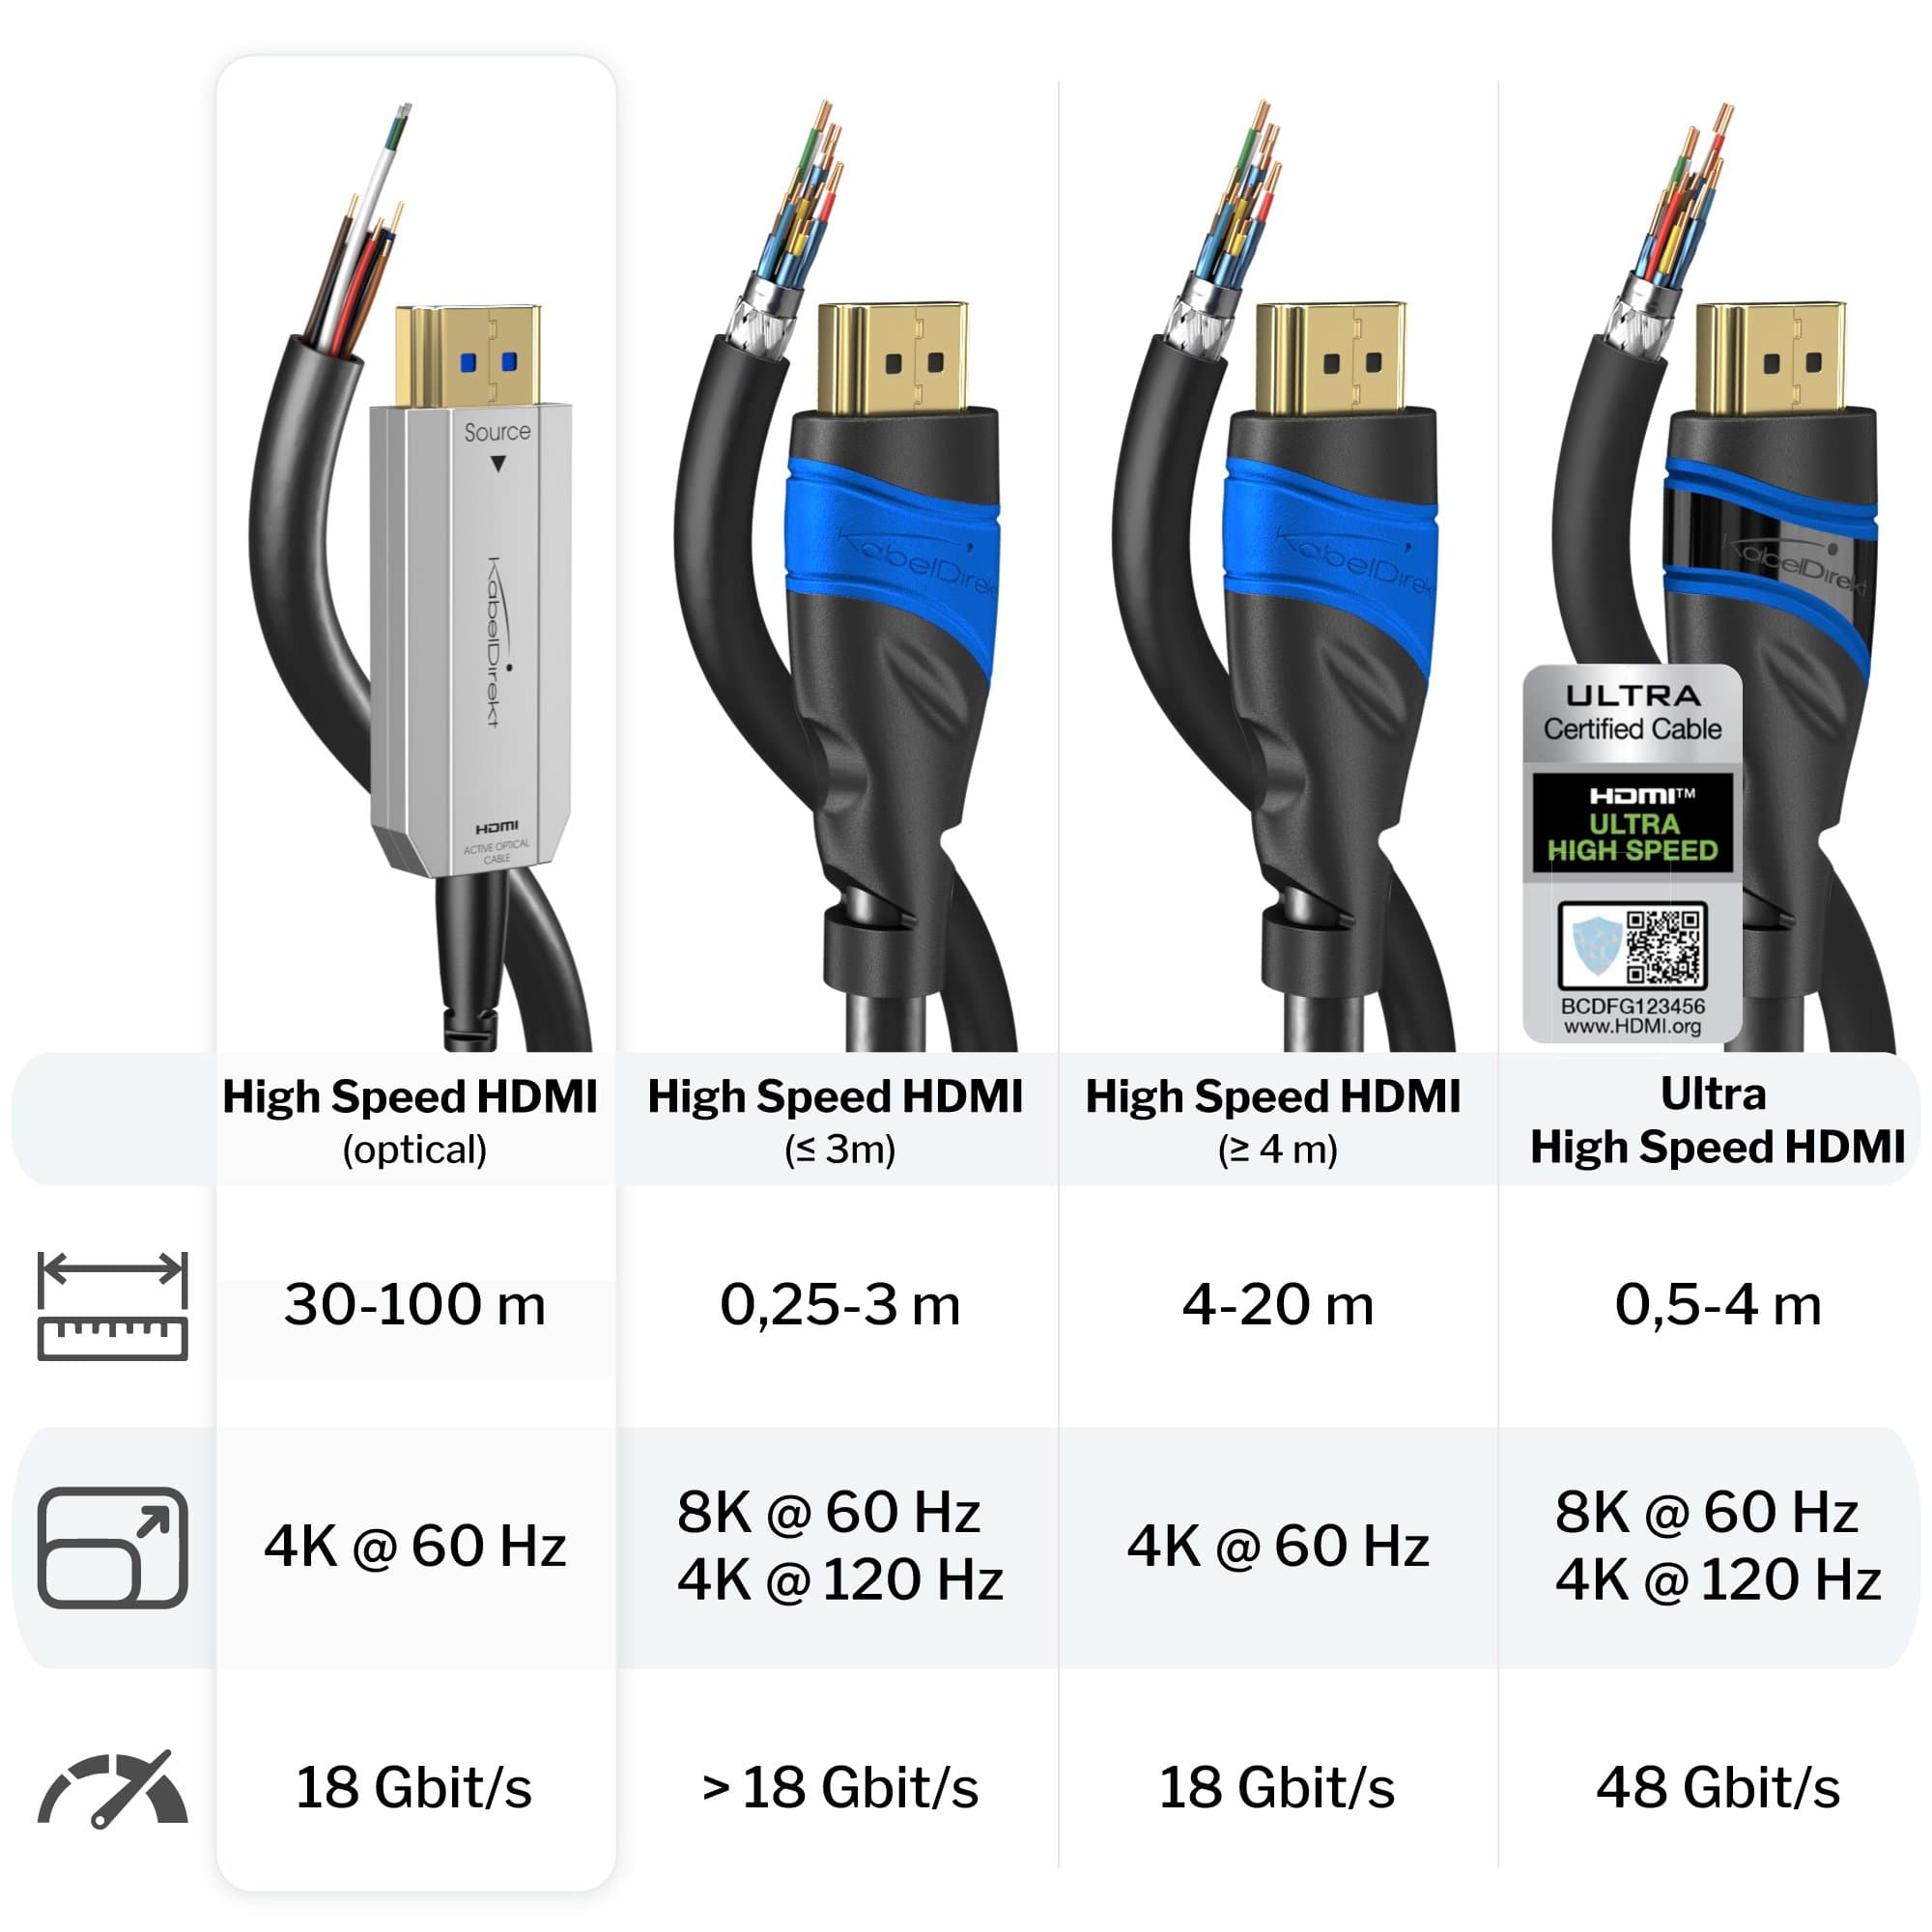 Patois Kiezelsteen focus Optical 4K Ultra High Speed HDMI 2.0 cable – 4K@60Hz, up to 300ft -  KabelDirekt